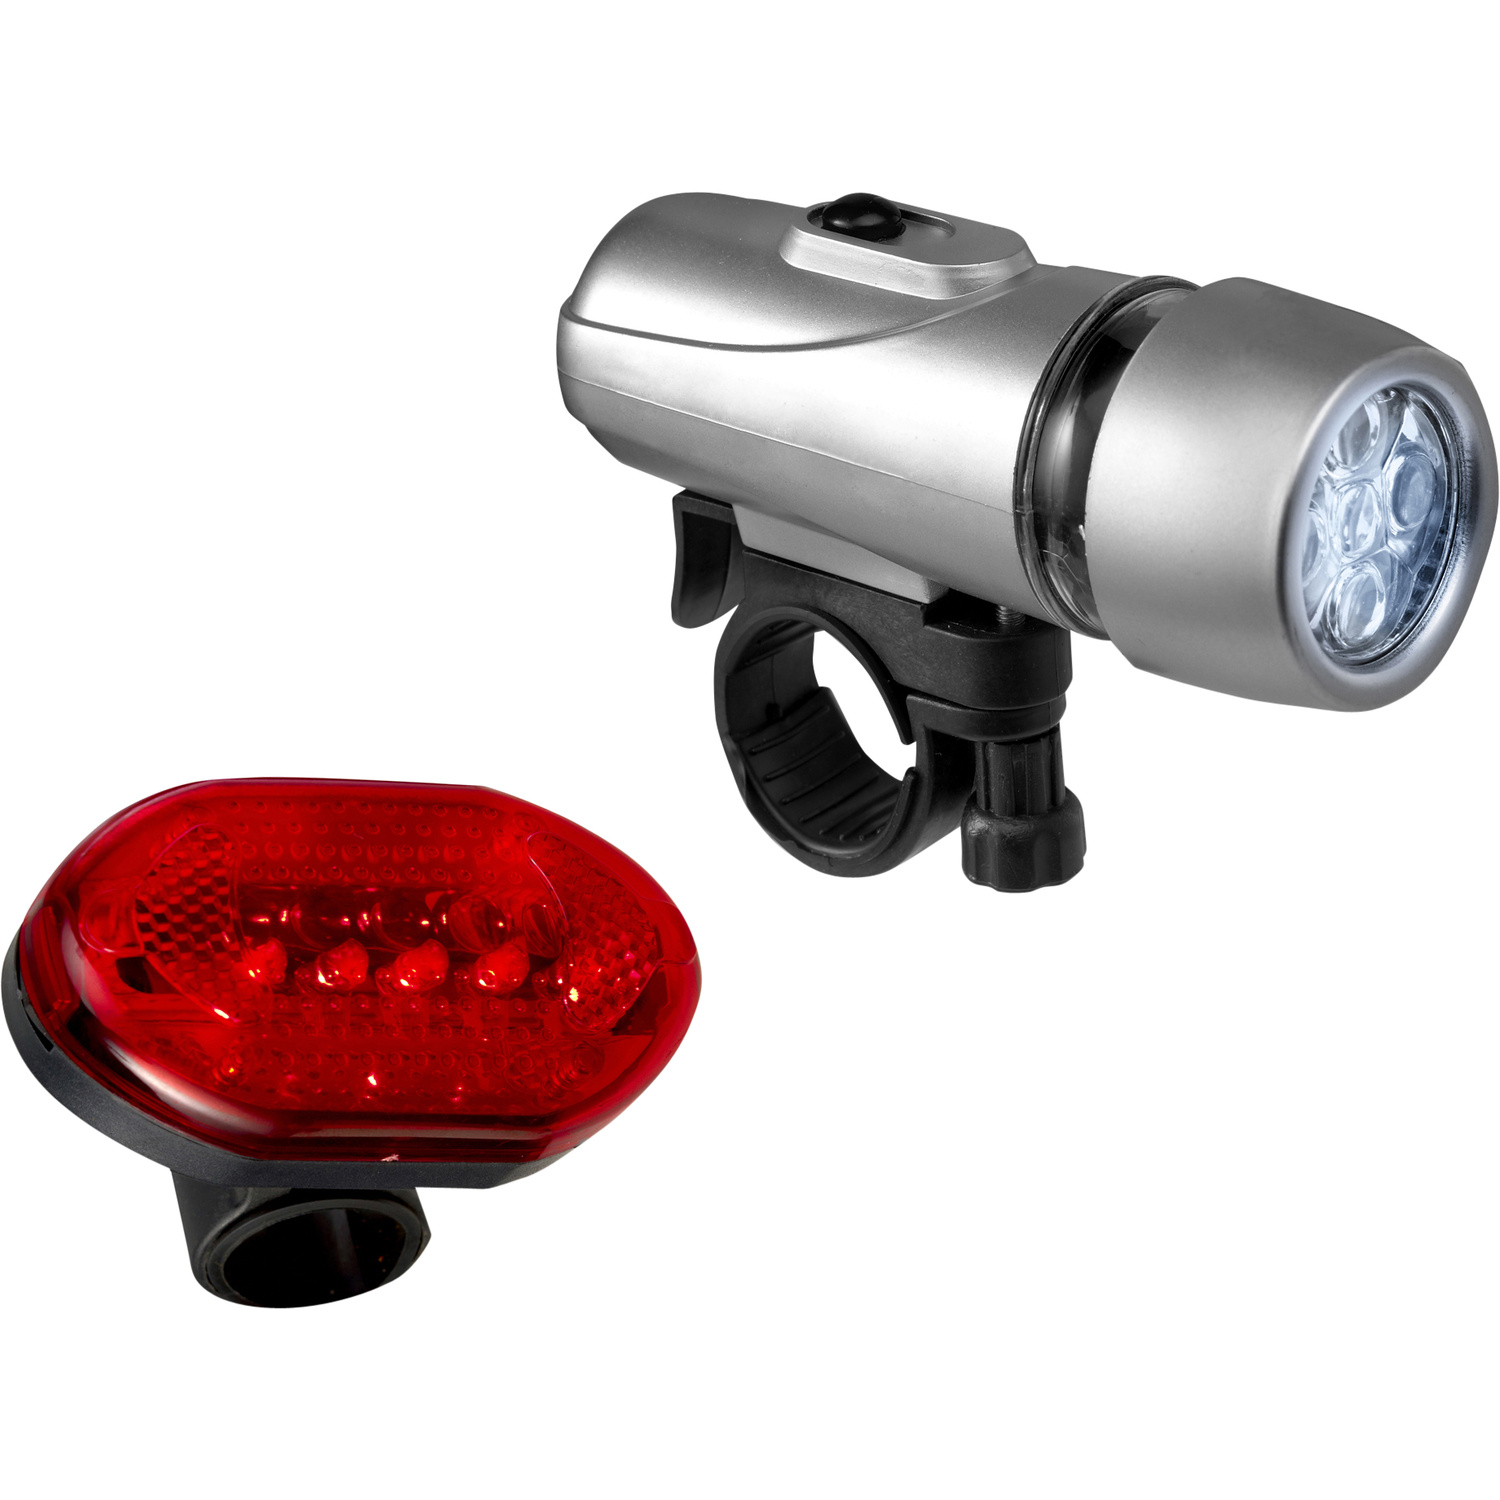 004856 009999999 3d135 lft pro01 fal - Pocket torch, 3 LED lights